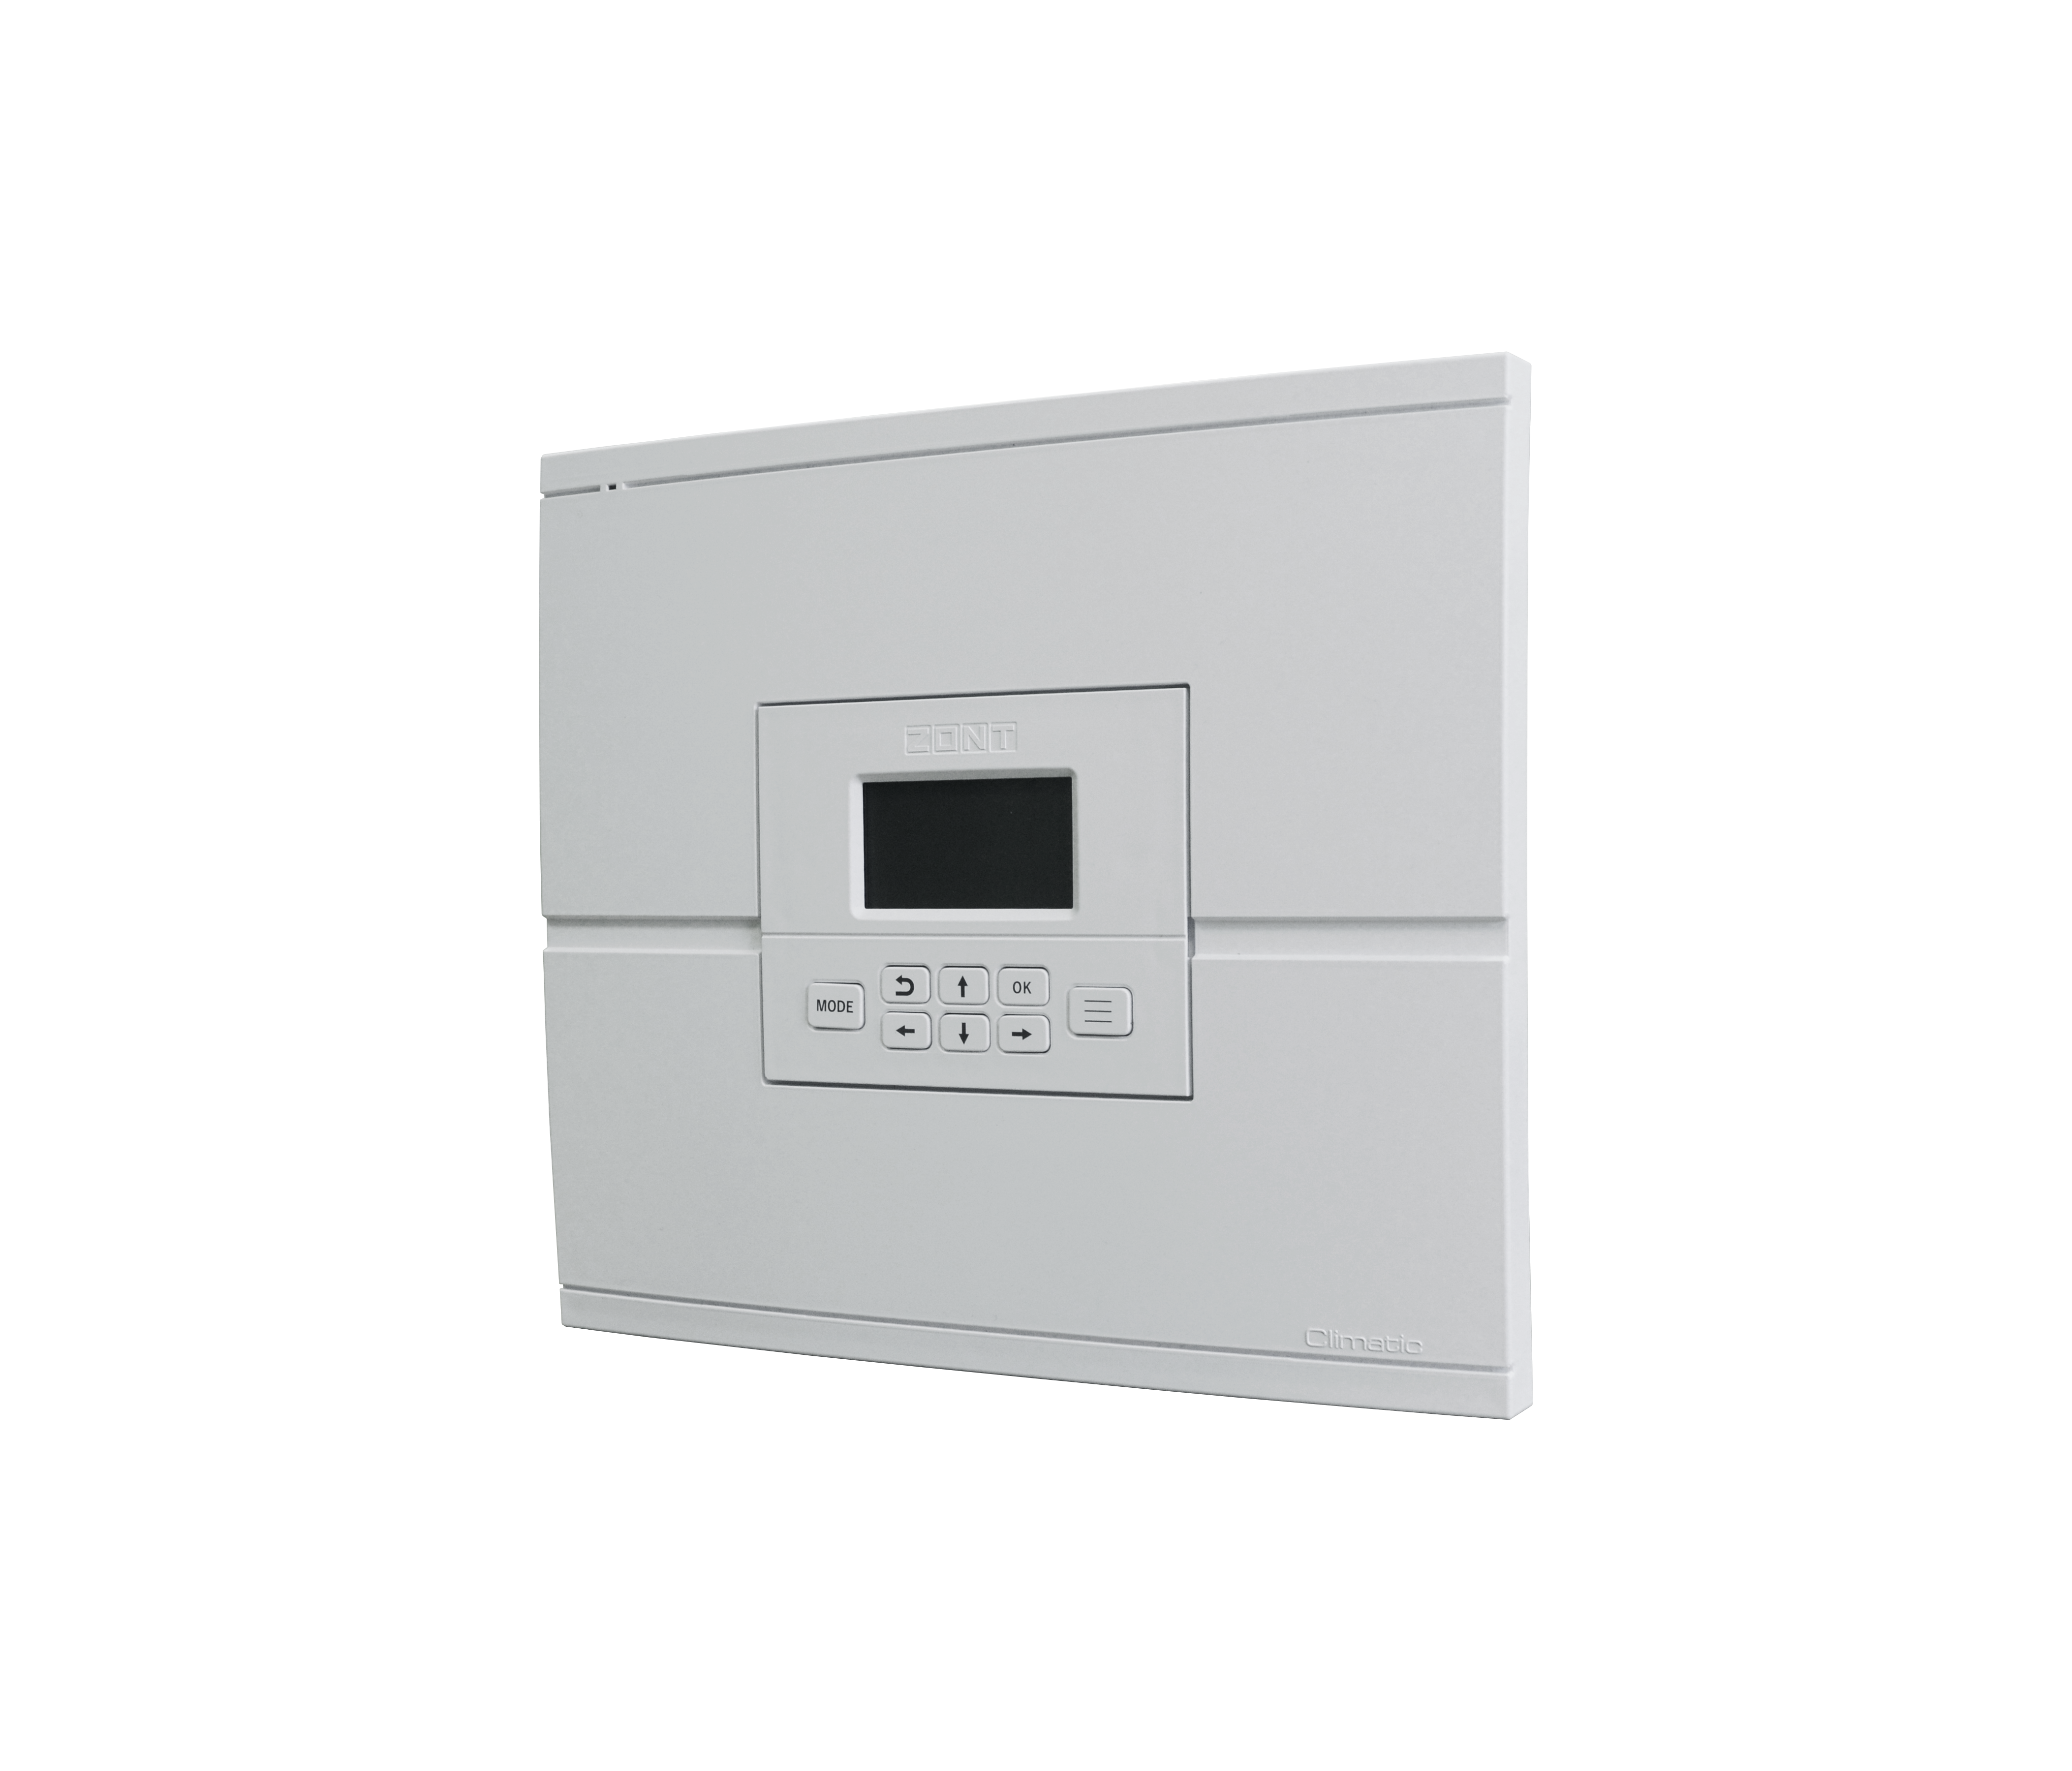 Погодозависемый автоматический регулятор для многоконтурных систем отопления ZONT Climatic 1.1 (741)